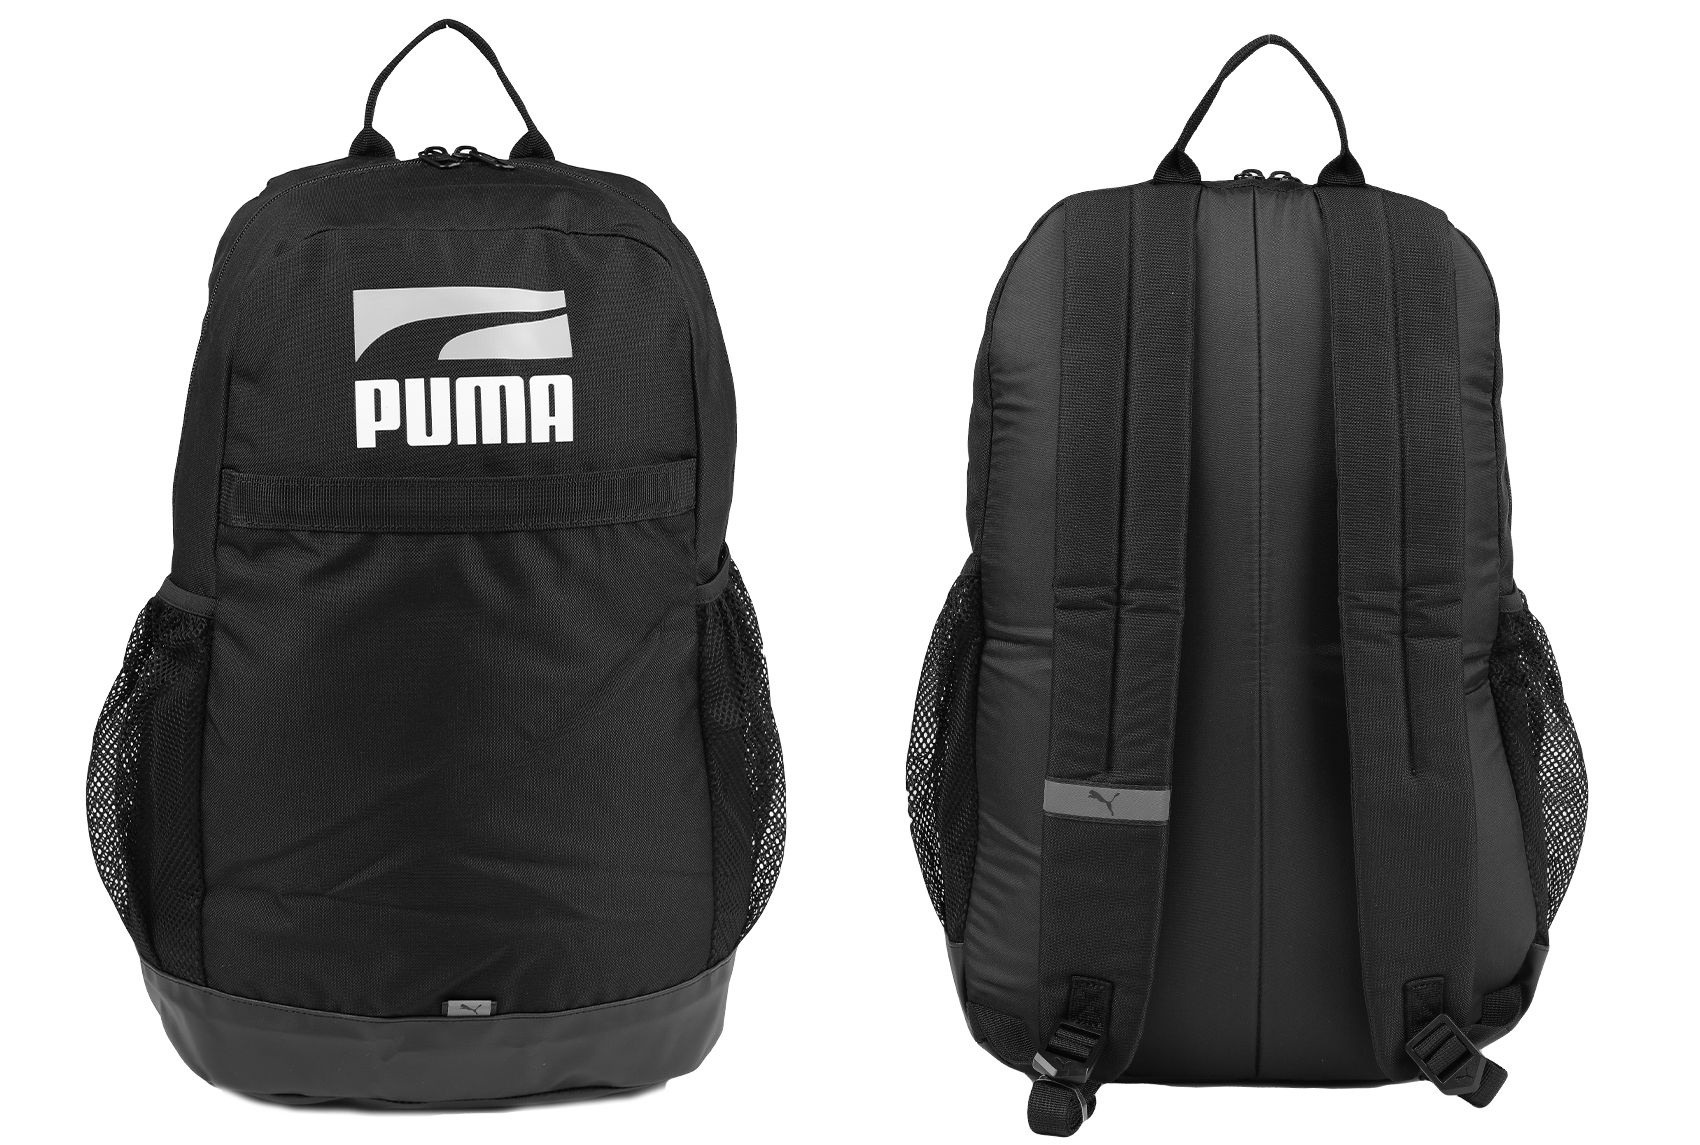 PUMA Rucksack Plus II 78391 01 Backpack